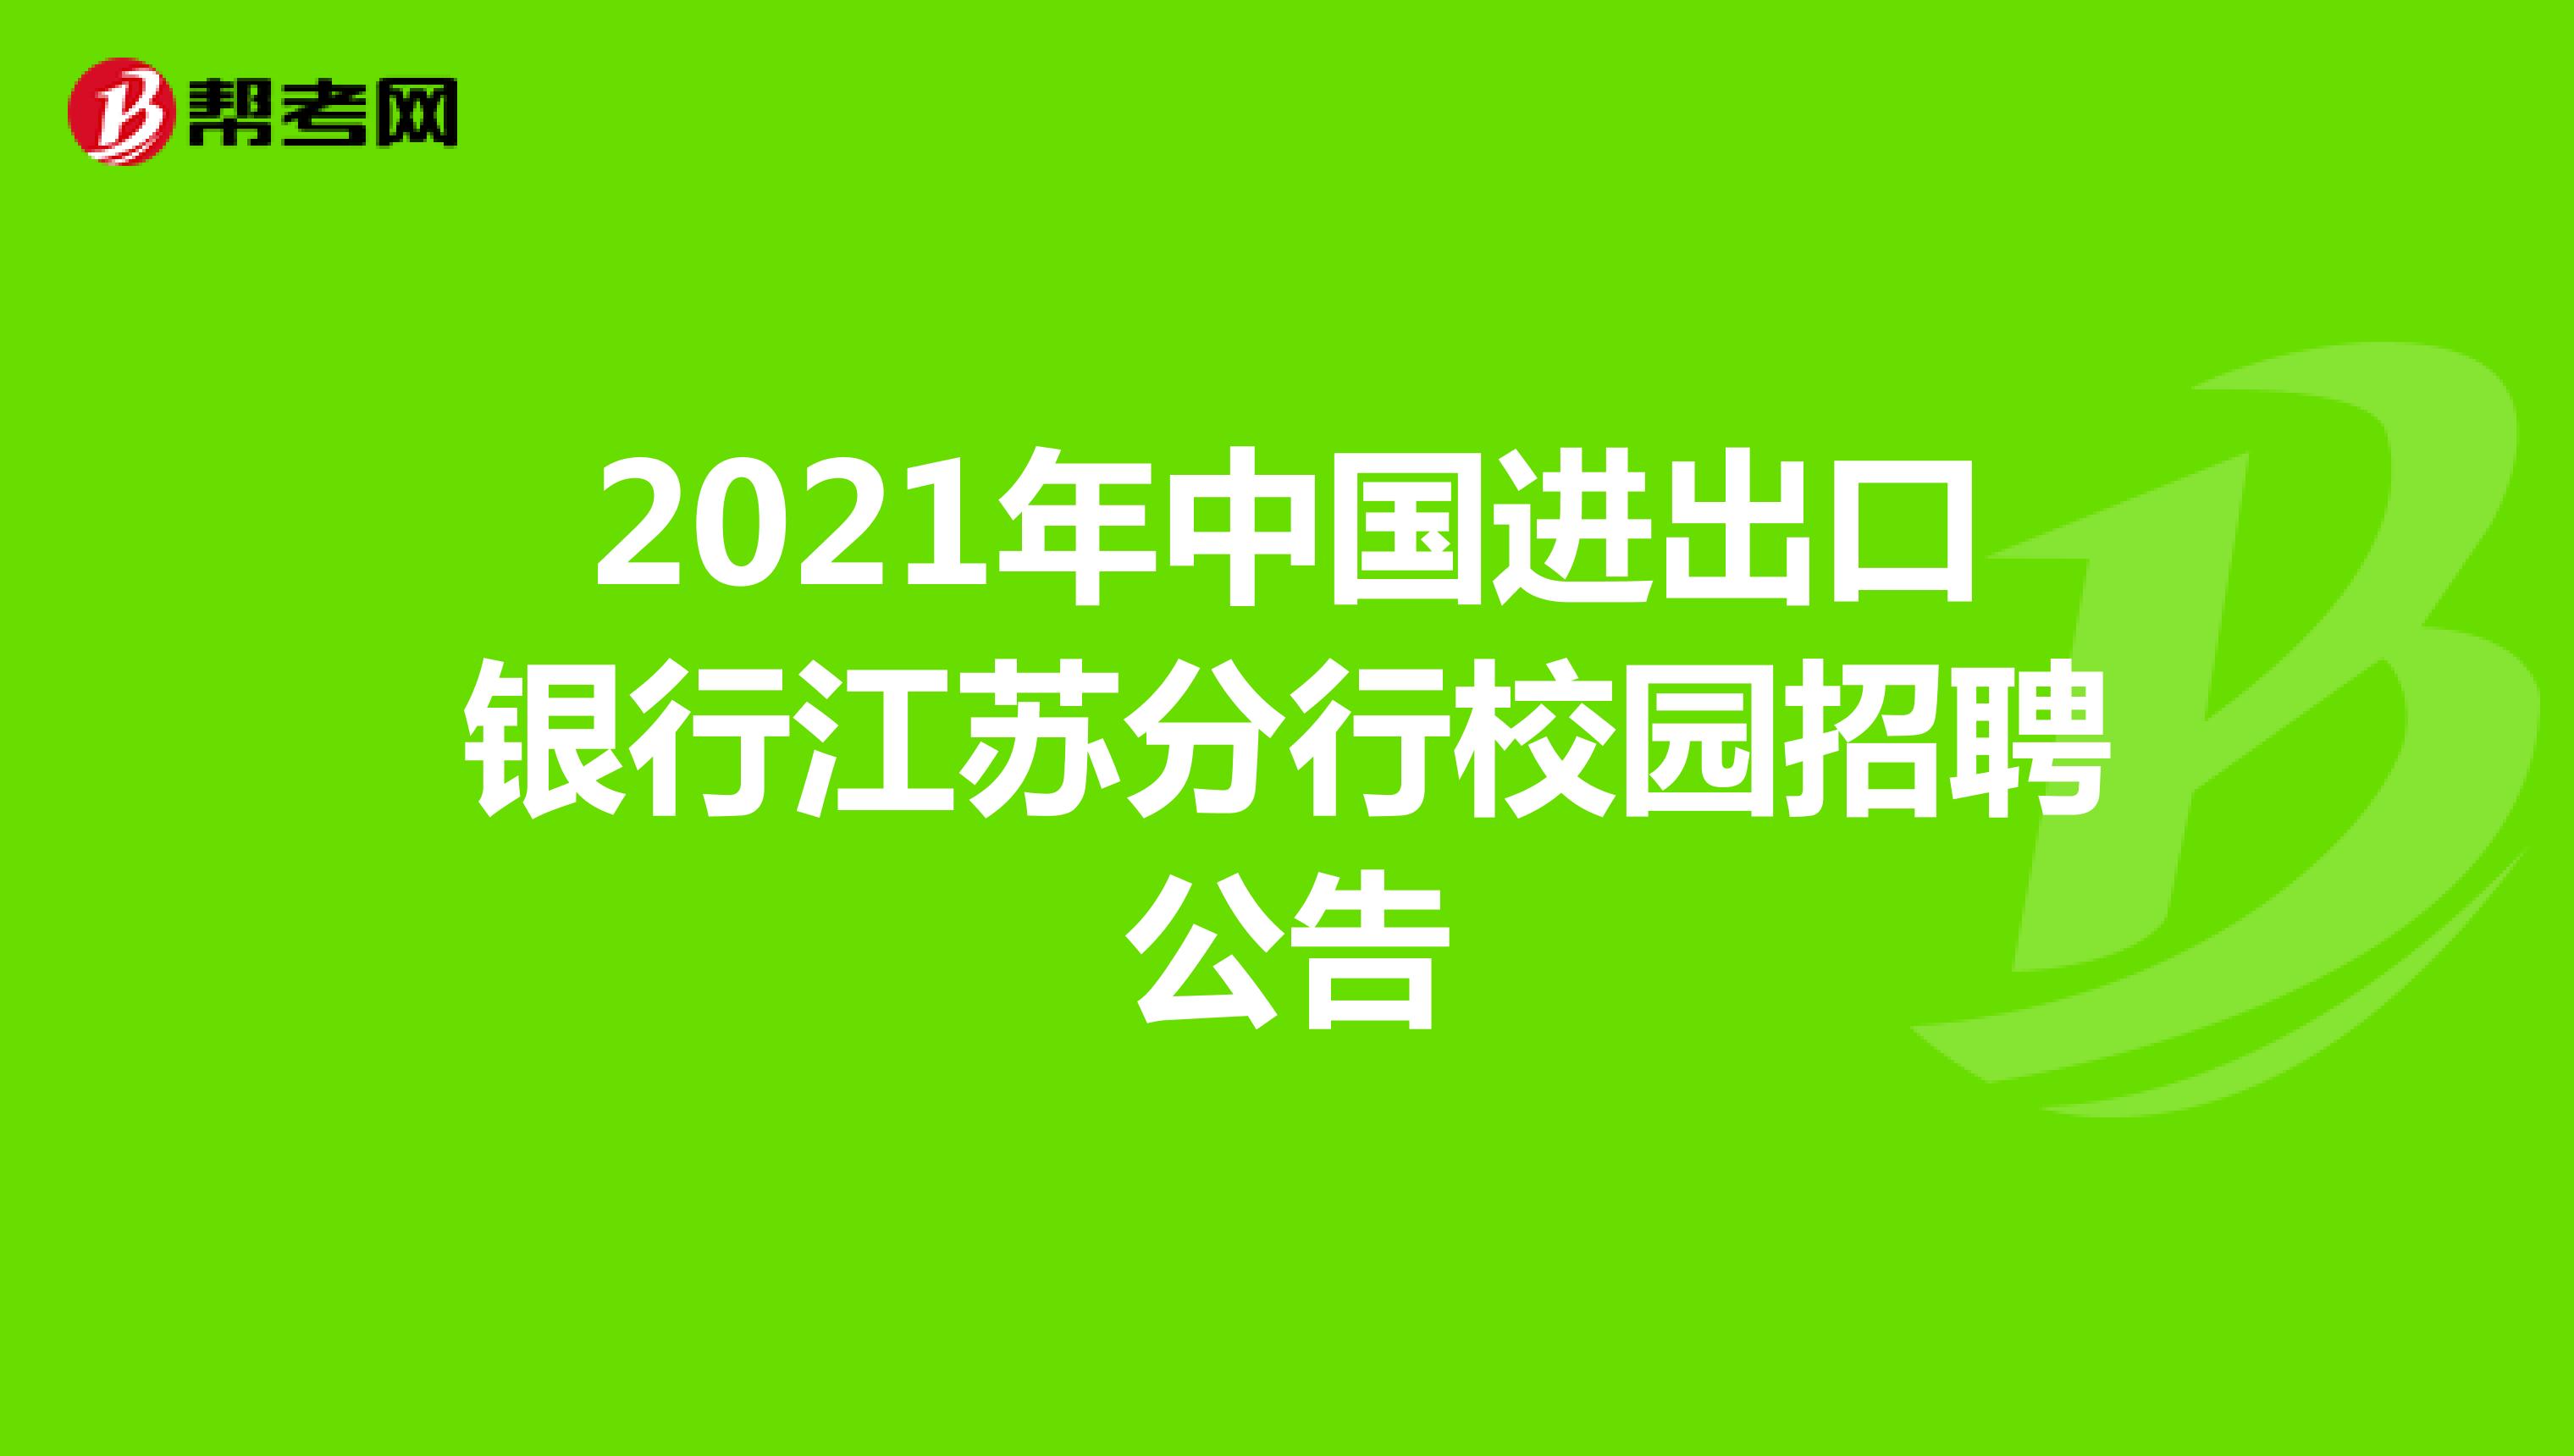 2021年中国进出口银行江苏分行校园招聘公告